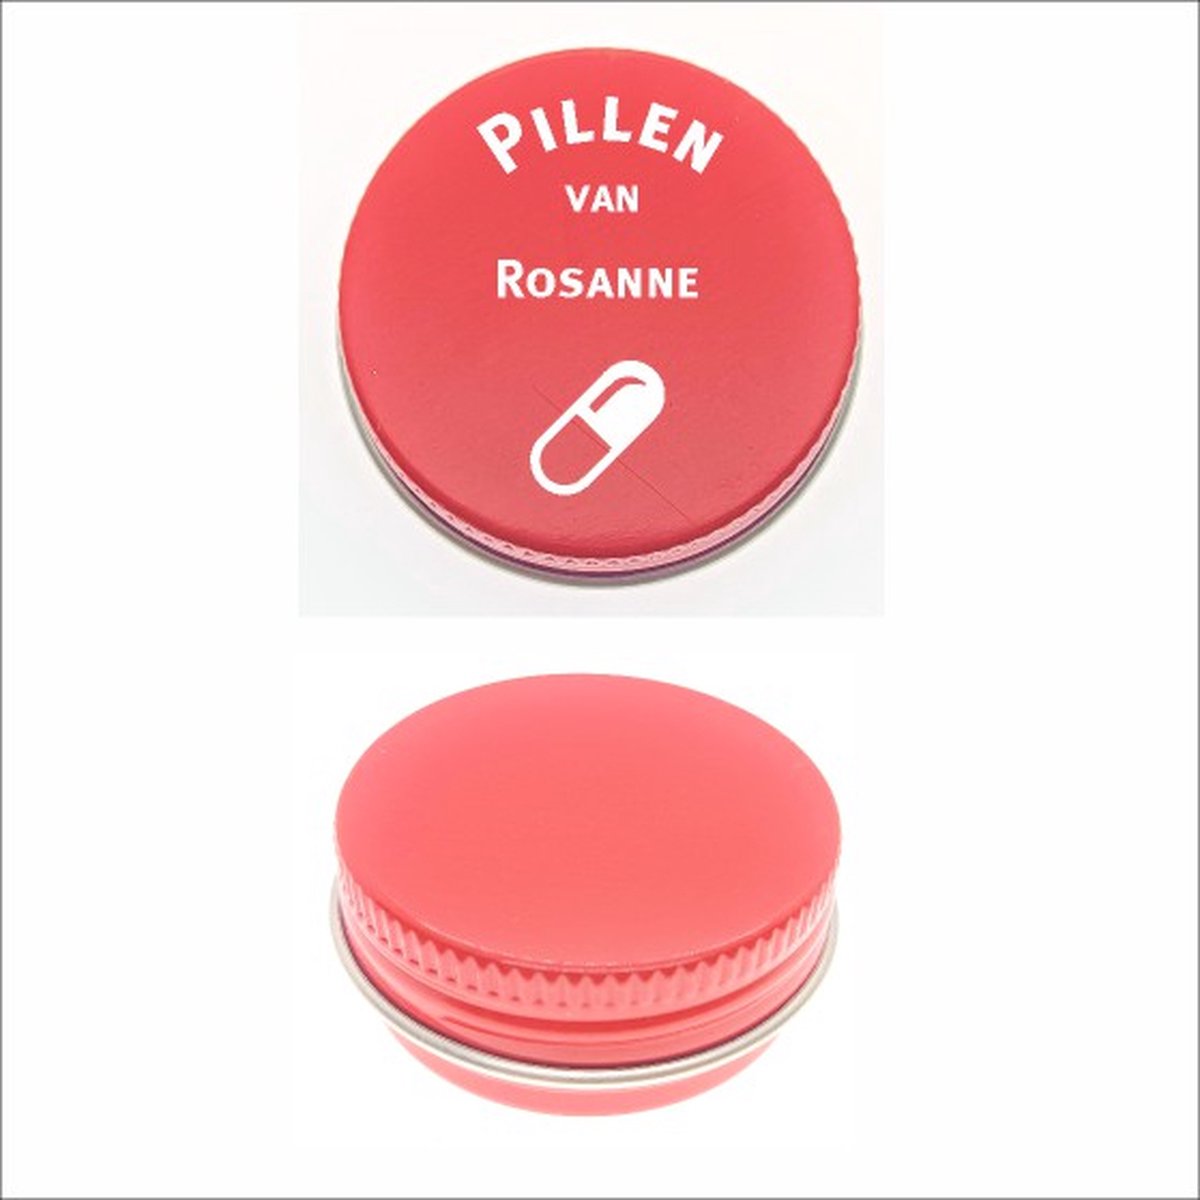 Pillen Blikje Met Naam Gravering - Rosanne